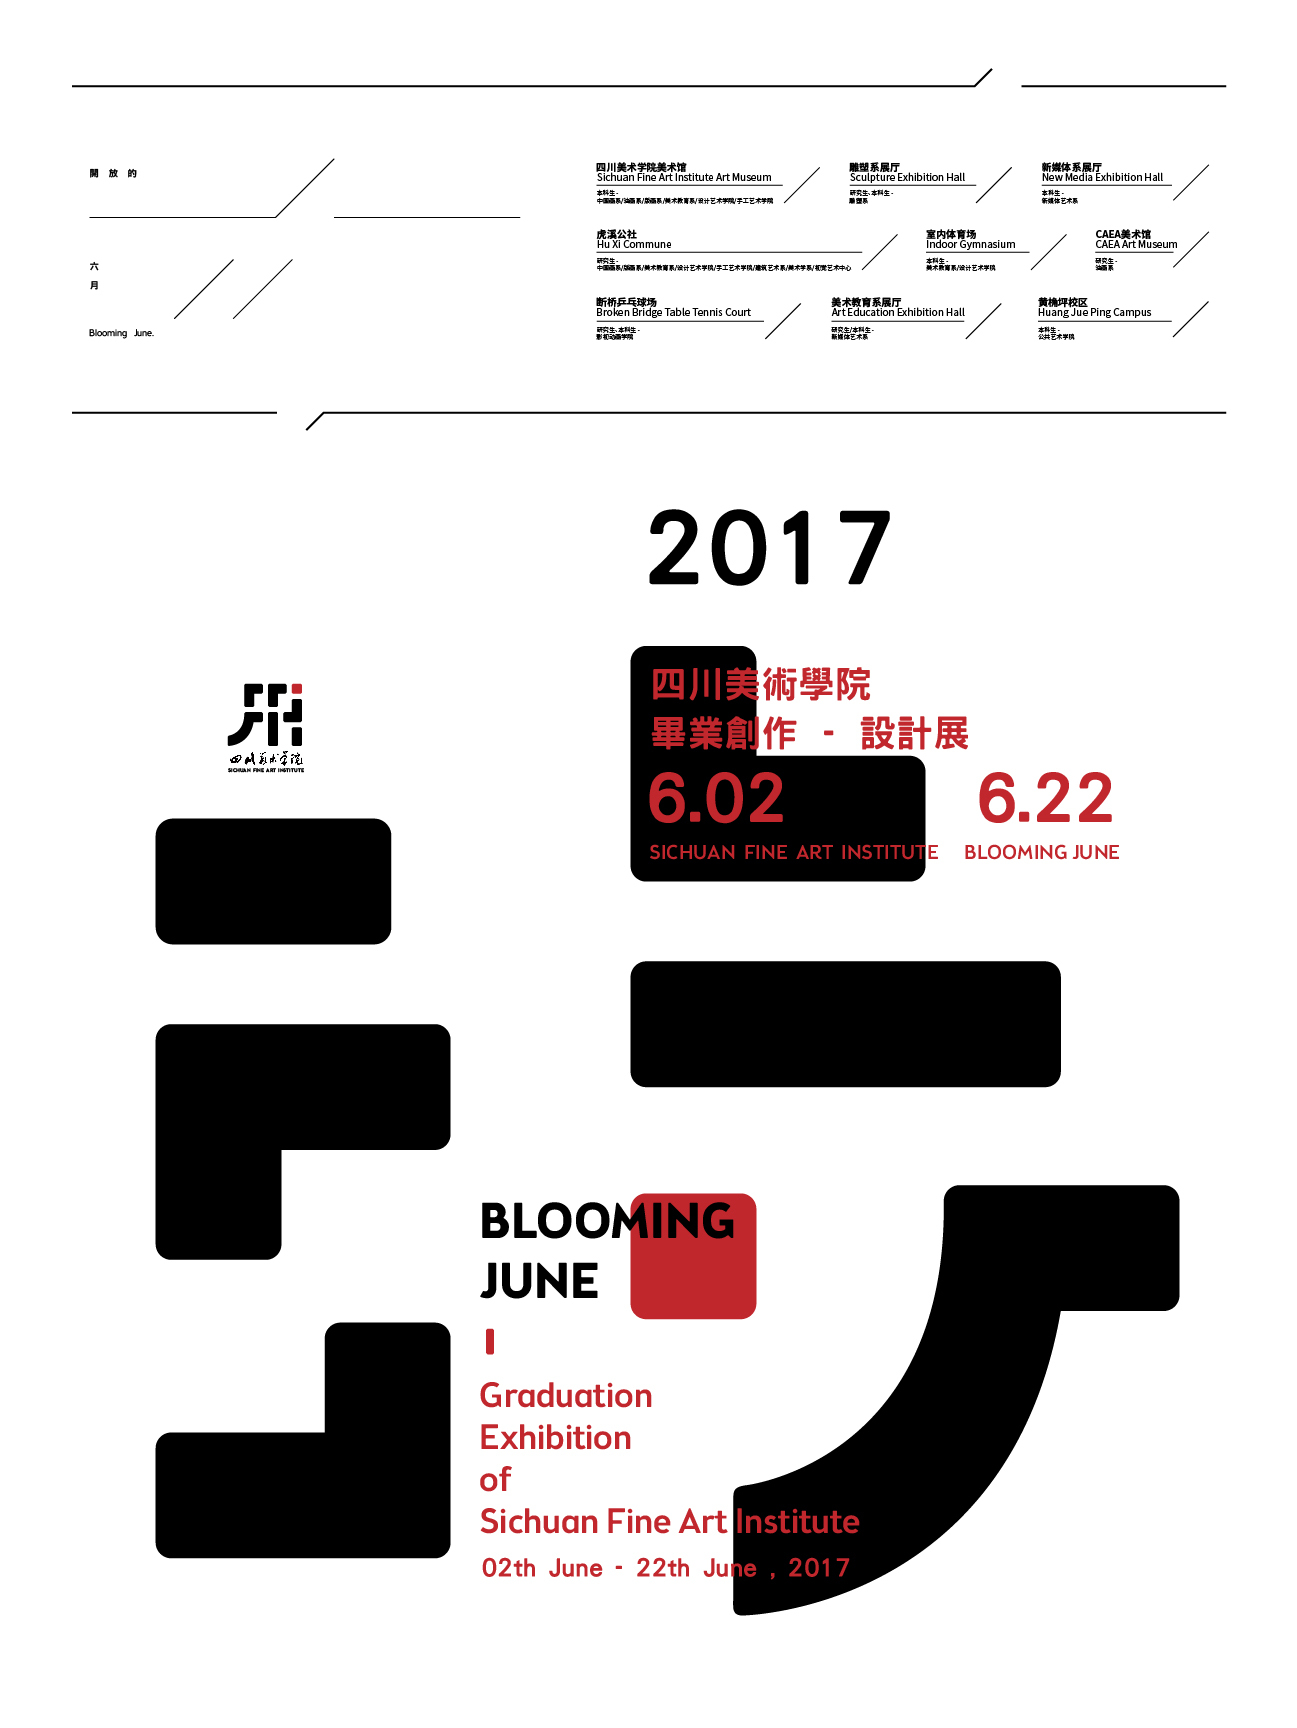 四川美术学院新校徽-提案图11